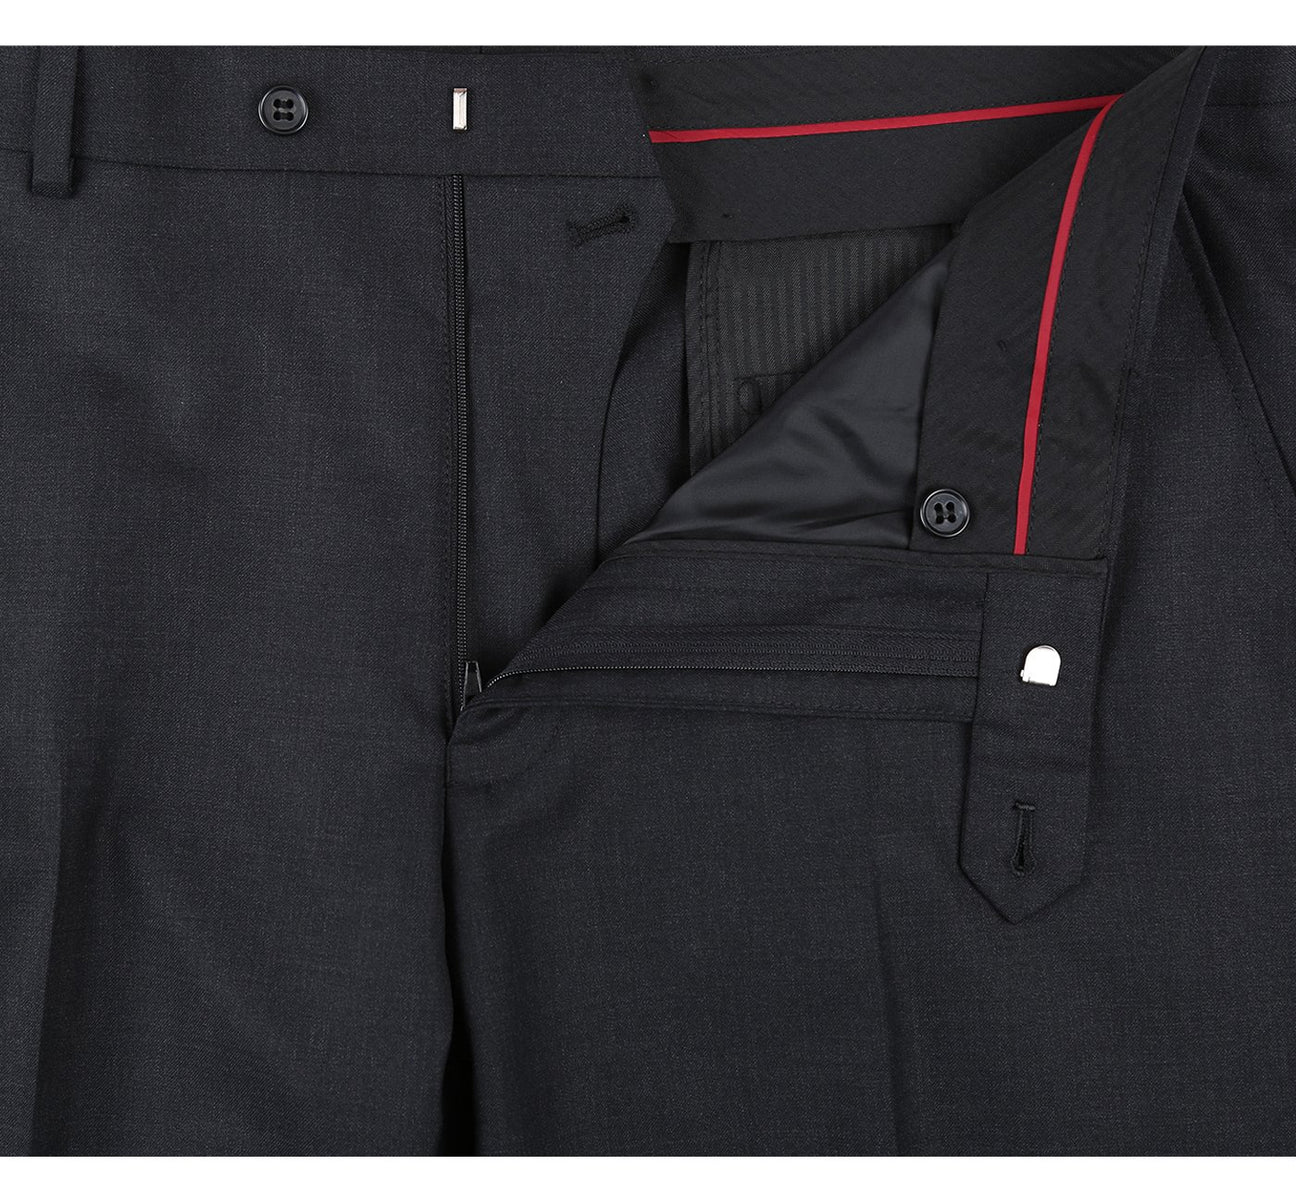 Renoir Charcoal Slim Fit Flat Front 100% Wool Suit Pant